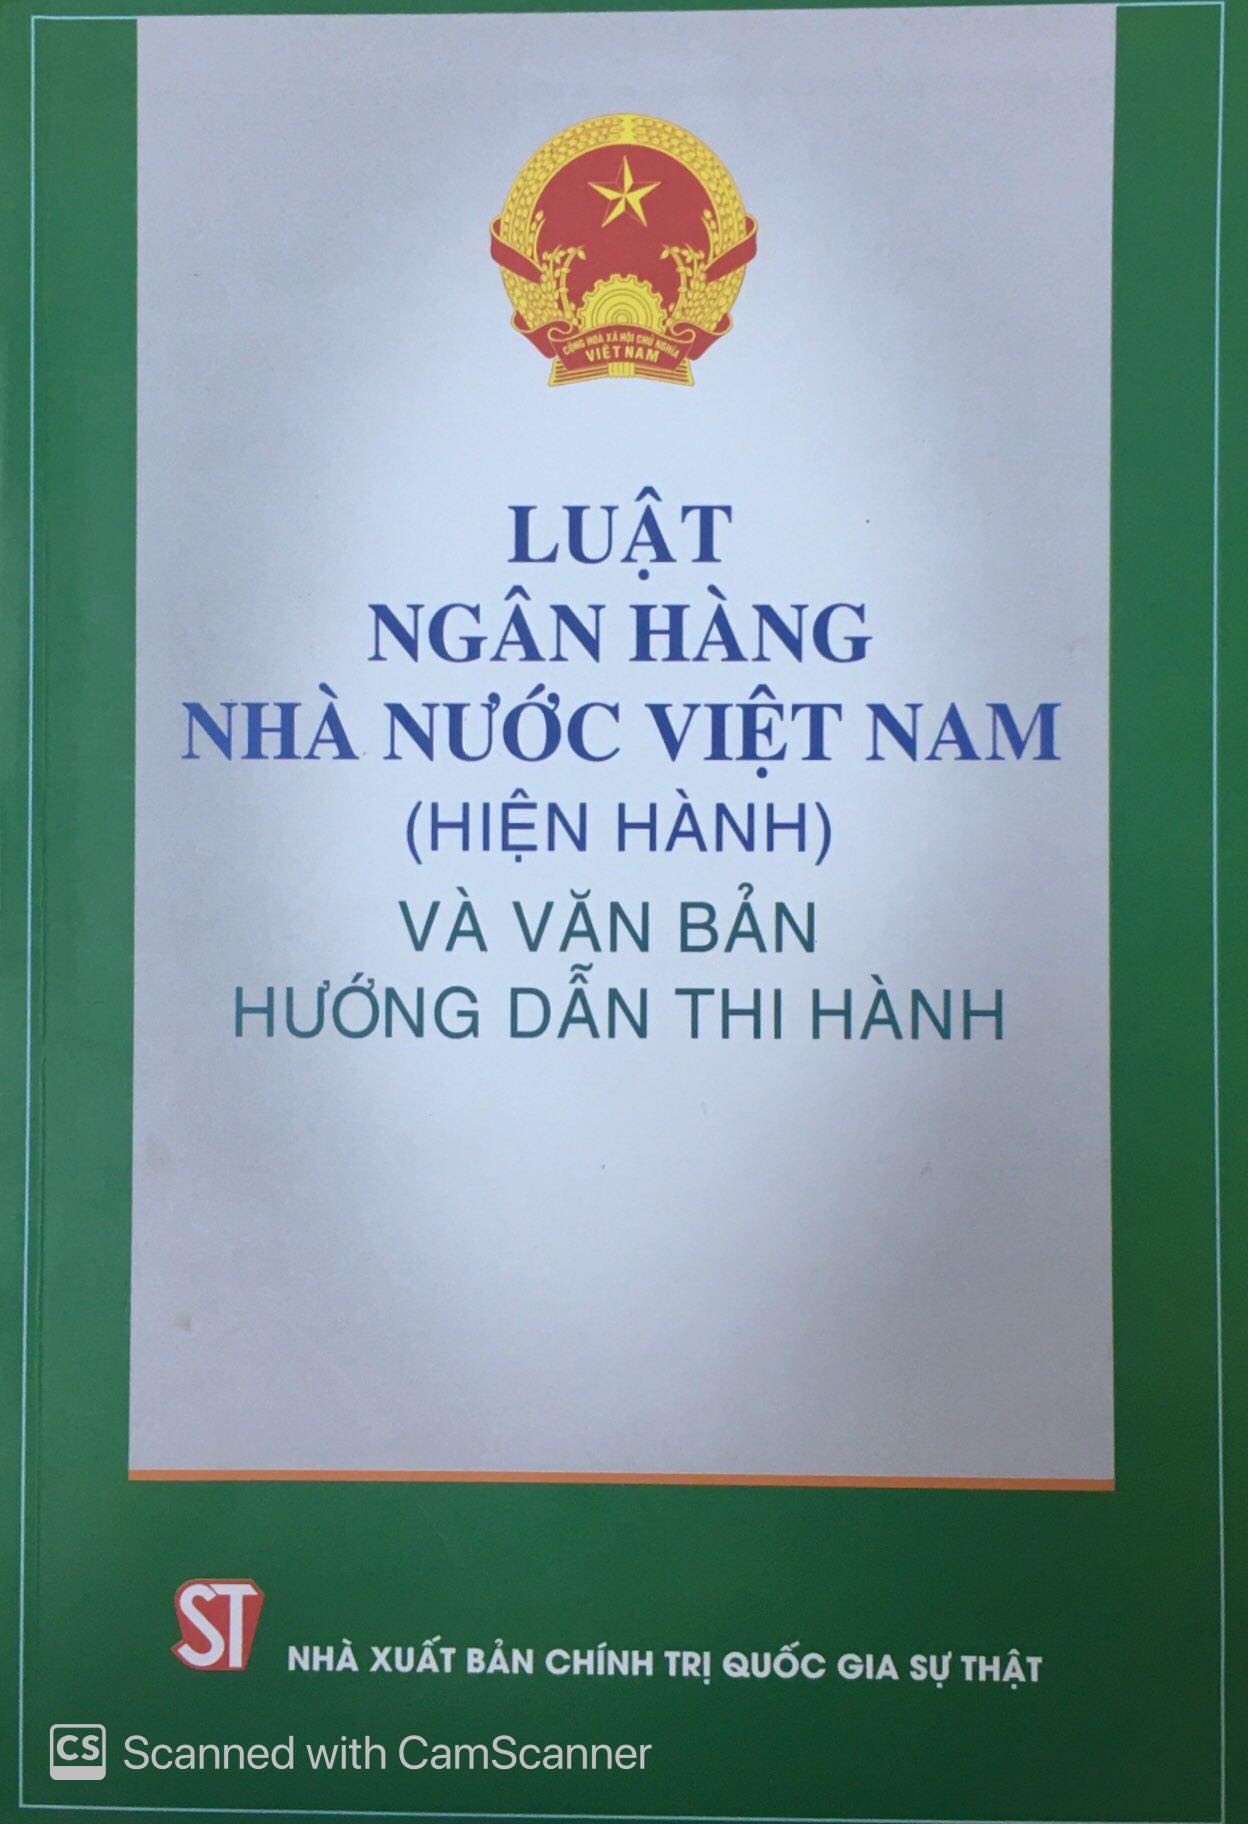 Luật Ngân hàng Nhà nước Việt Nam (hiện hành) và văn bản hướng dẫn thi hành